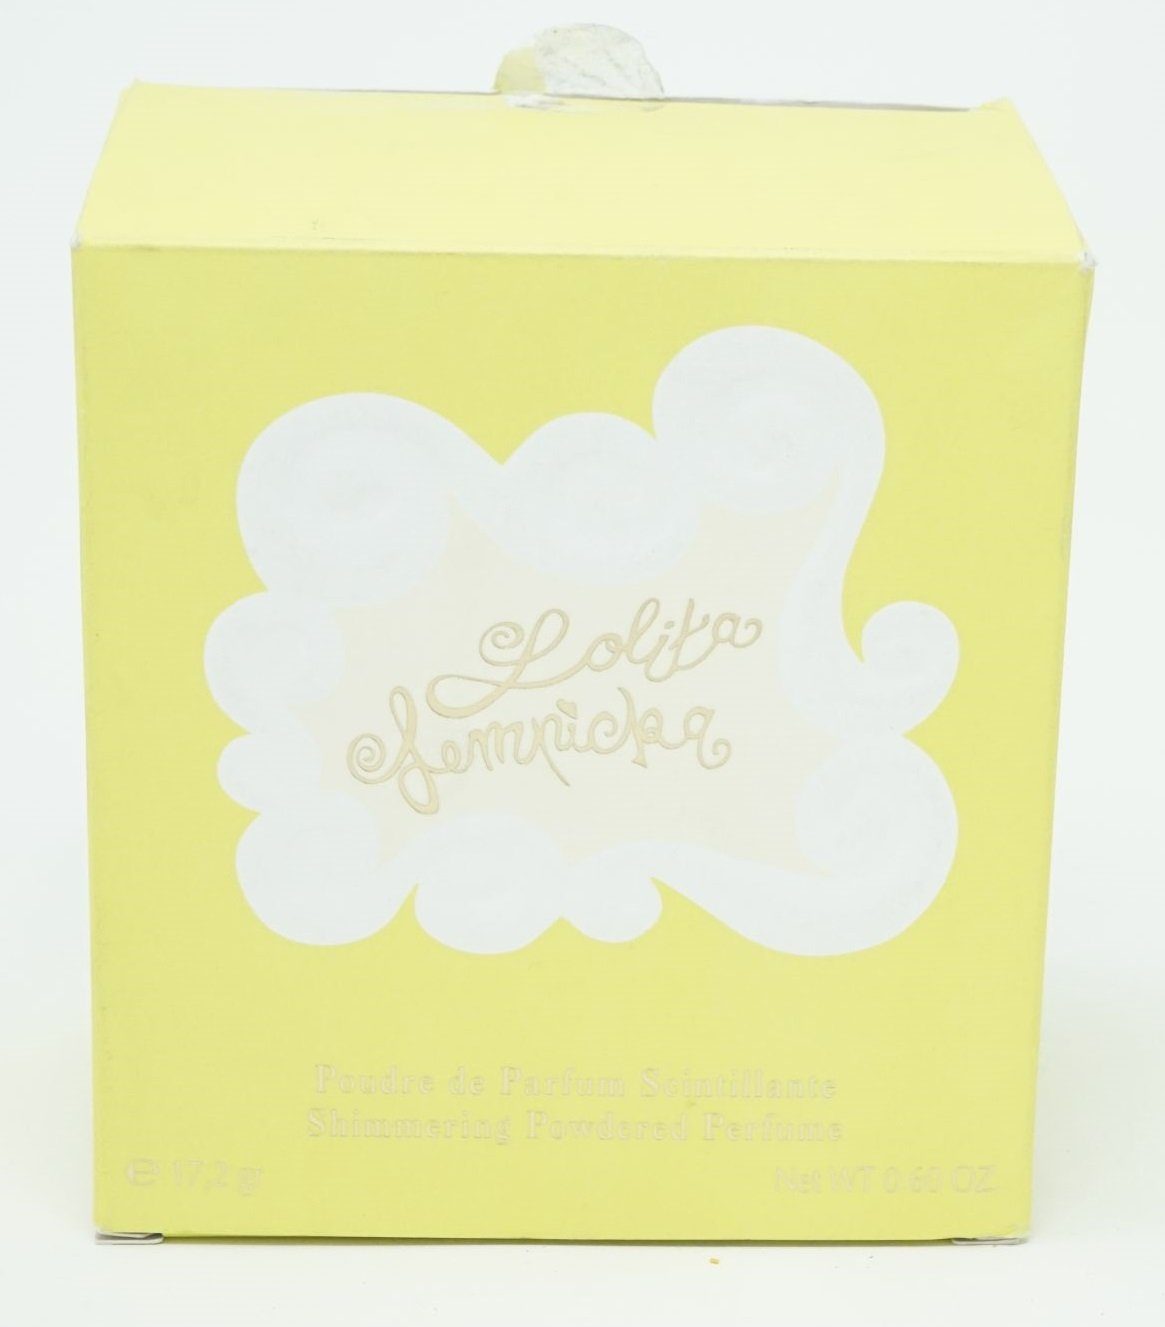 Lolita Lempicka Öl-Parfüm Lolita Powdered 17,2g Perfume Shimmering Lempicka